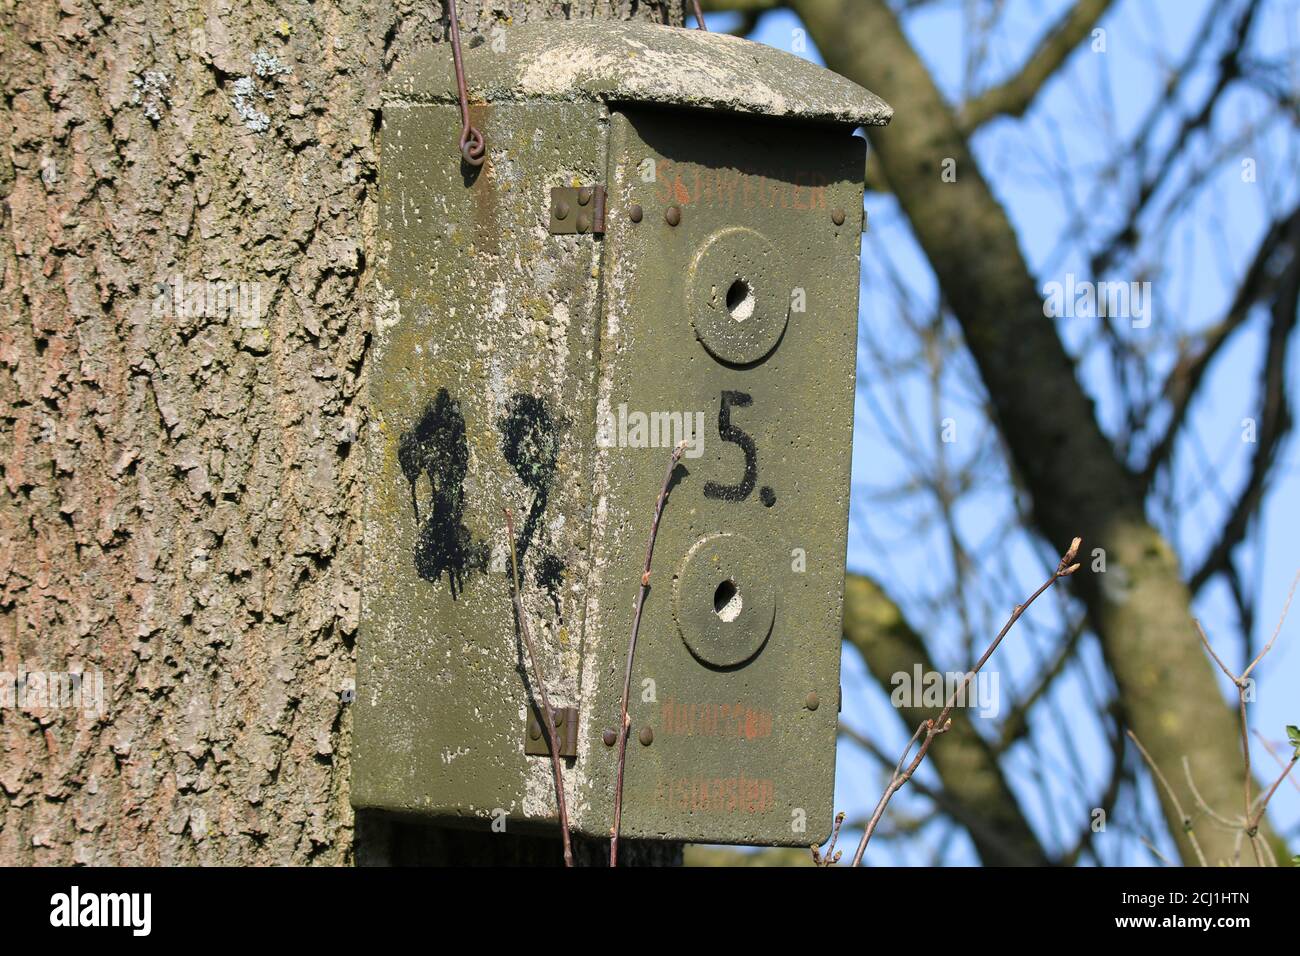 Hornetbox dans un arbre, Allemagne Banque D'Images